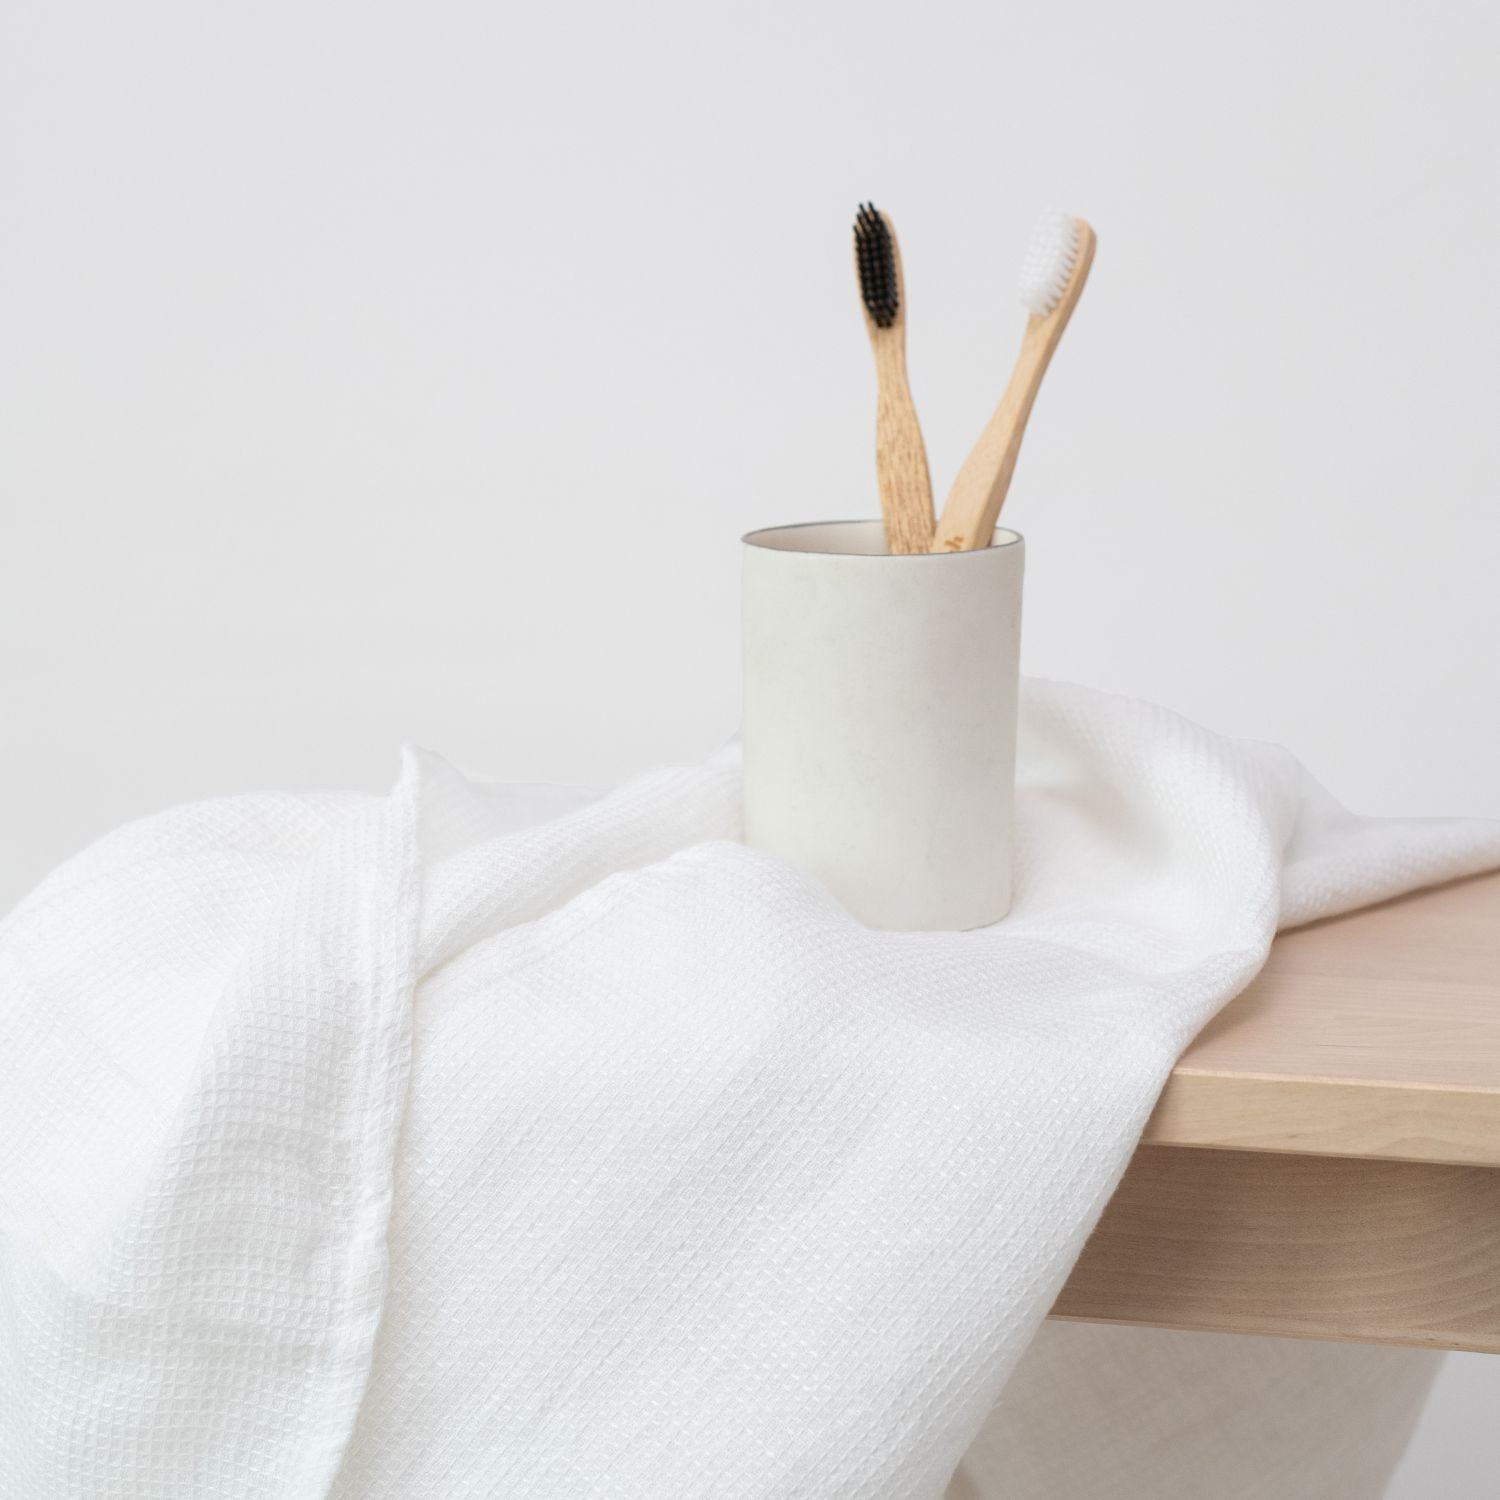 Liten våfflad handduk i vit som ligger över en träbänk. På den våfflade handduken står ett glas med tandborstar.